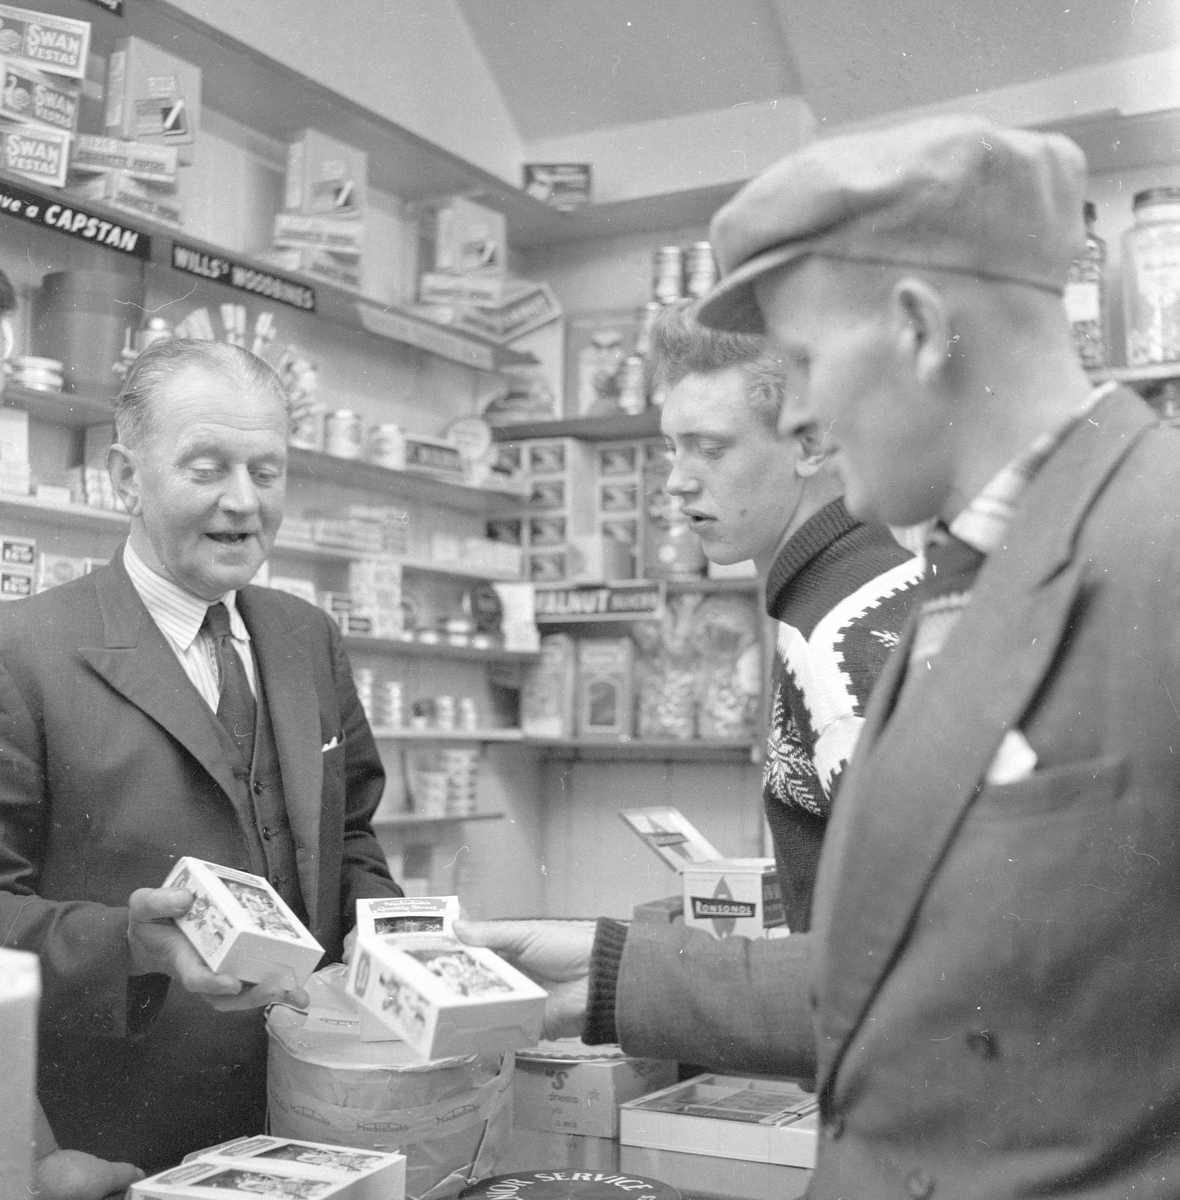 Pigghåfiske på Shetland.
Shetland, 14-22. mai 1958, kunder og innehaver i butikken.